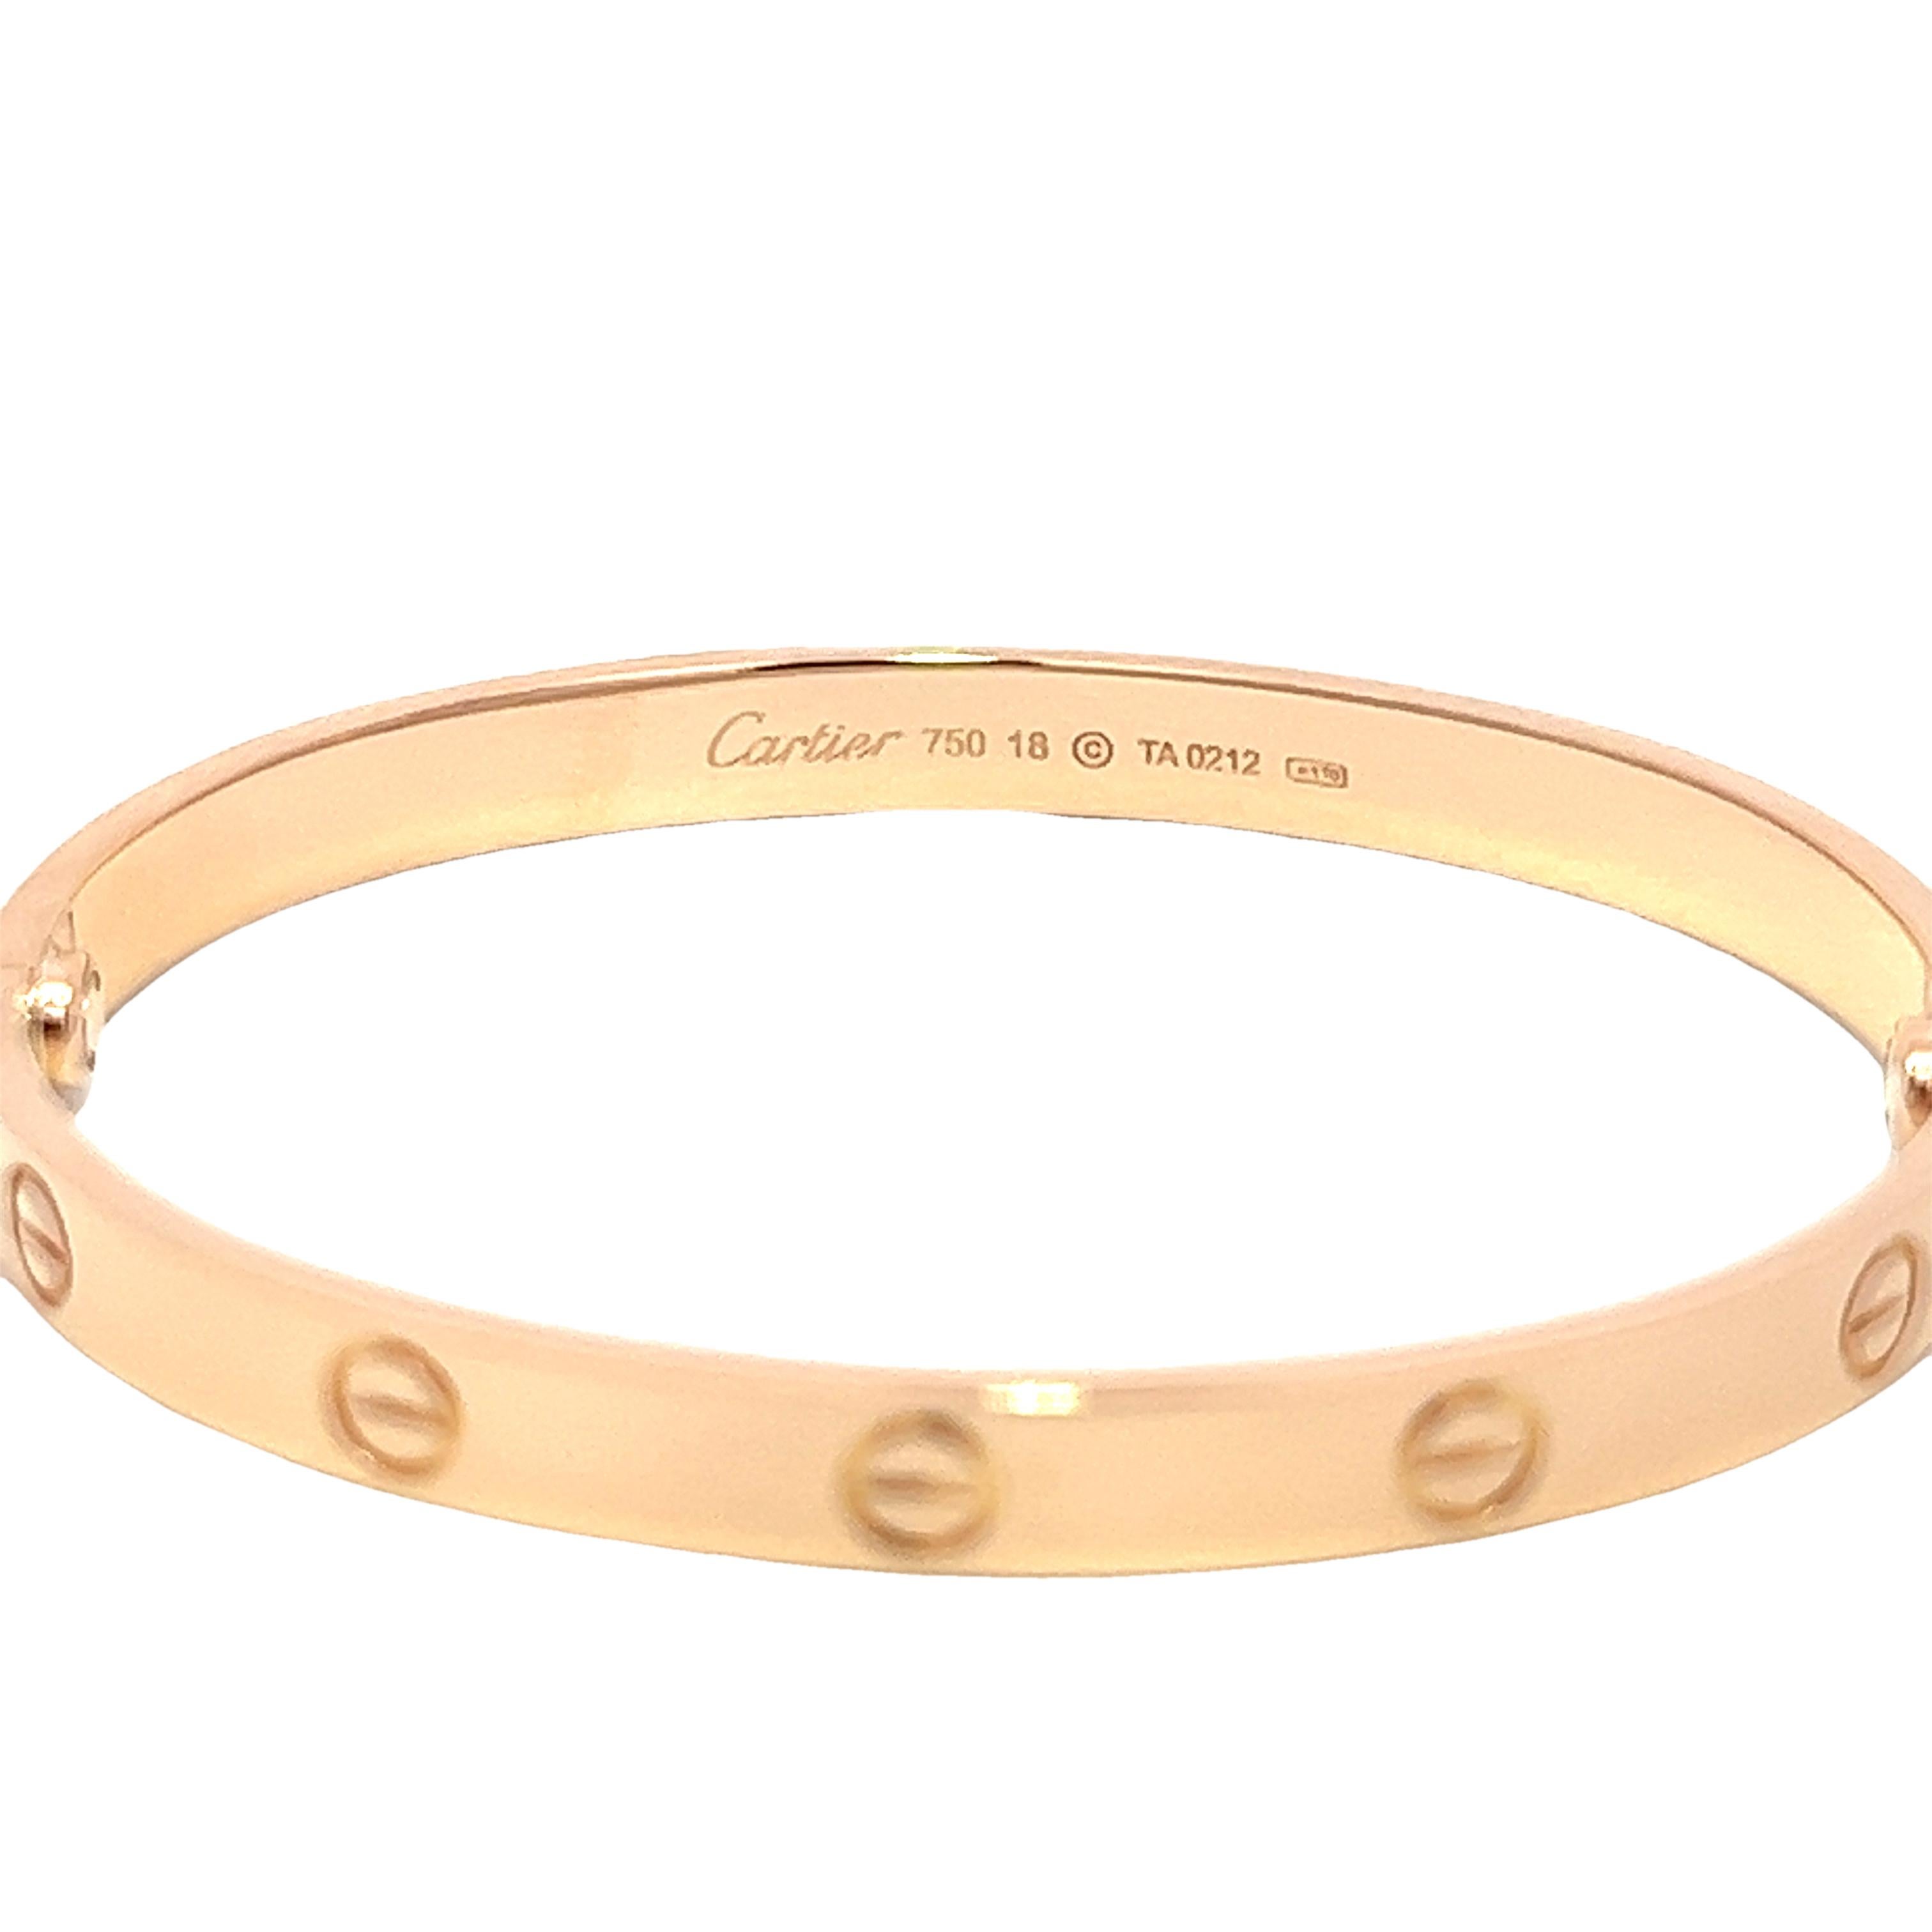 Original LOVE-Armband, 18 Karat Roségold (750/1000). Wird mit einem Schraubendreher geliefert. Das LOVE-Armband ist eine Ikone des Schmuckdesigns: ein eng anliegendes, ovales Armband, das aus zwei starren Bögen besteht, die am Handgelenk getragen